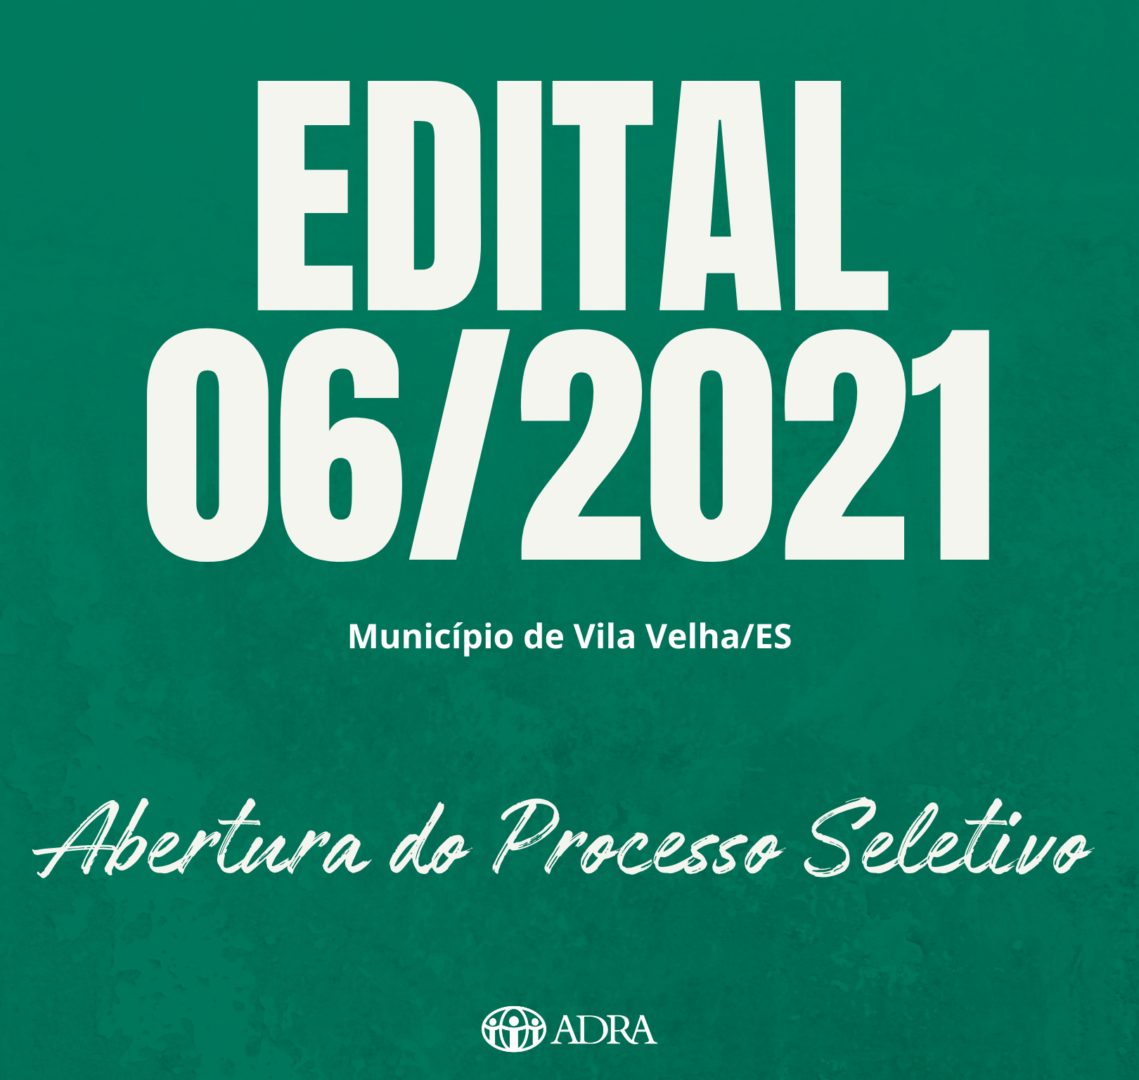 EDITAL 06/2021 – ABERTURA PROCESSO SELETIVO